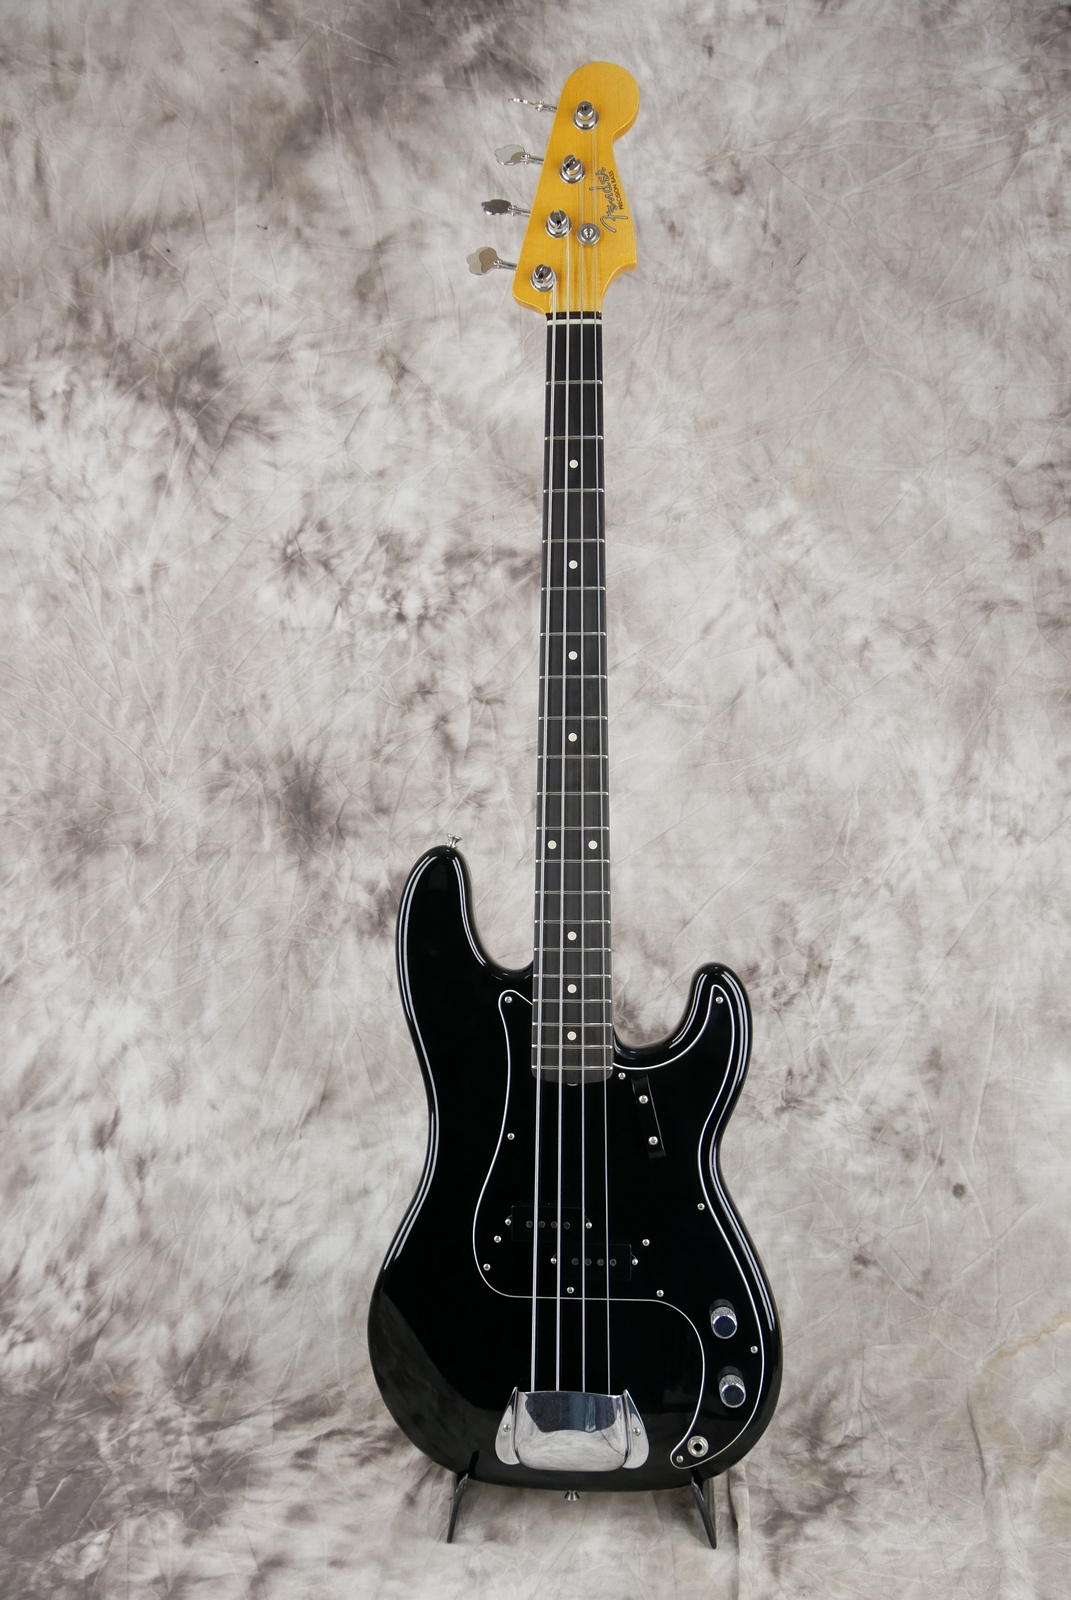 Fender-Precision-Bass-59-RI-black-Custom-Shop-ebony-fretboard-001.JPG